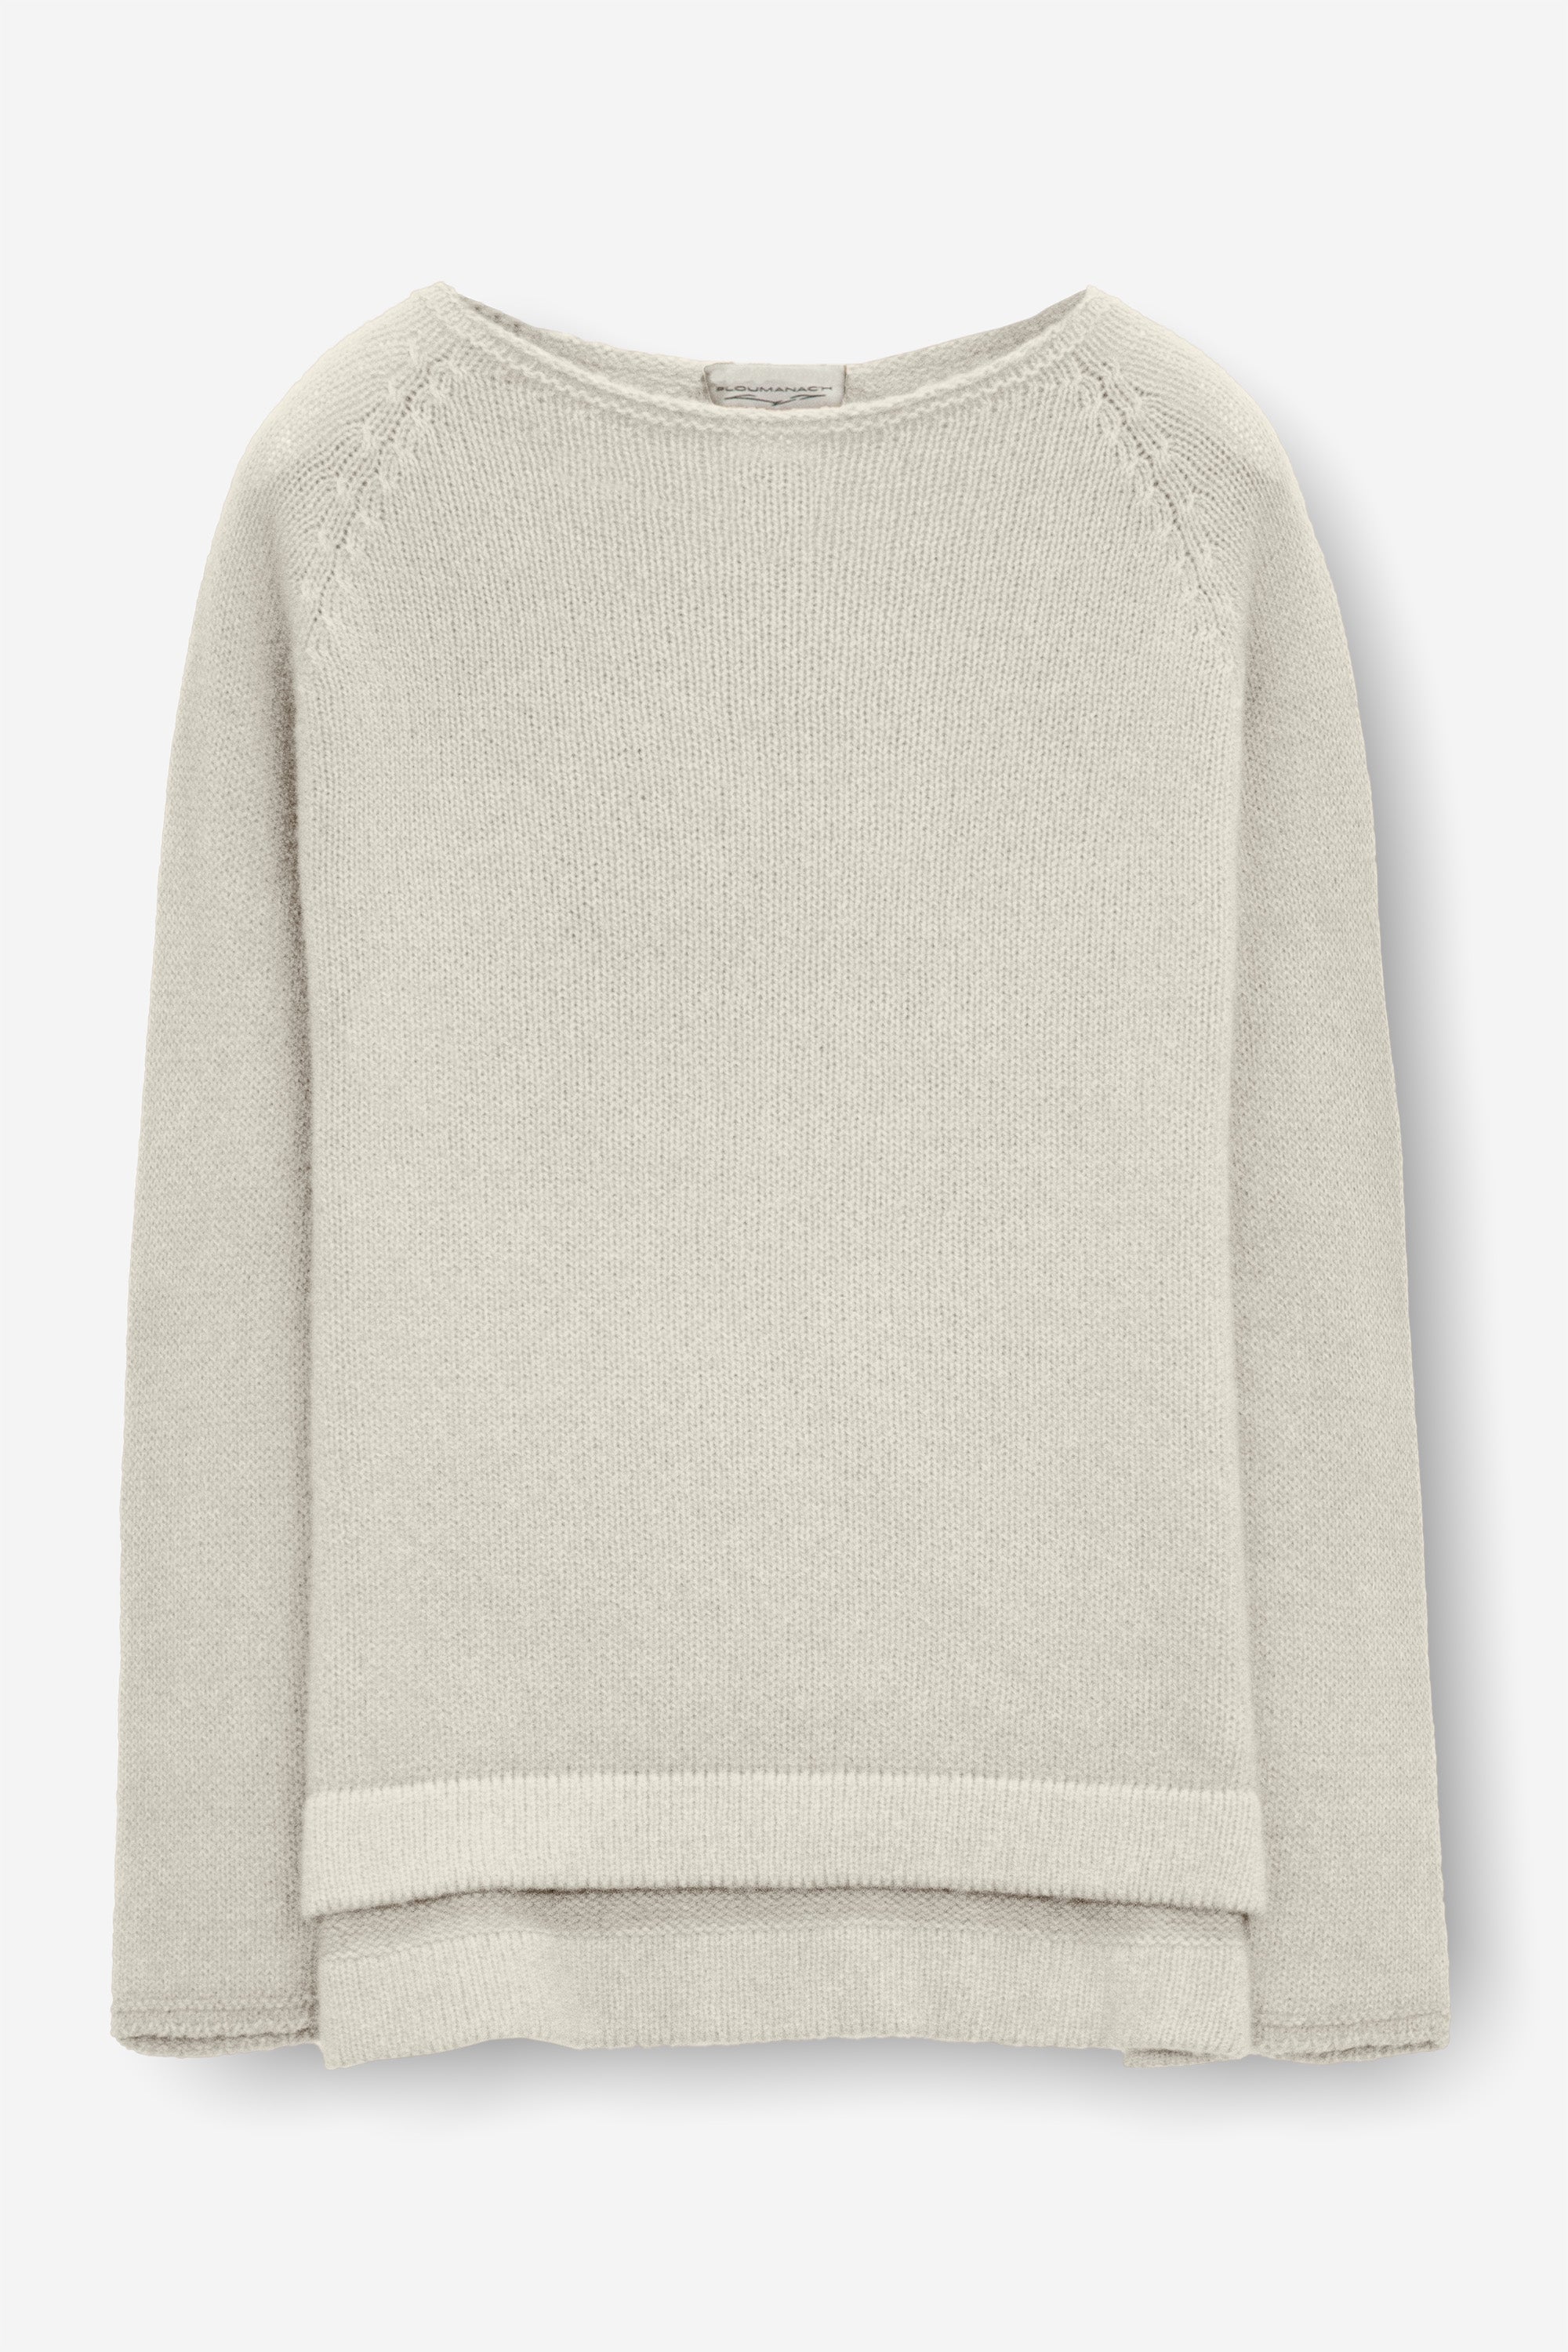 Appin Sweater - Foam